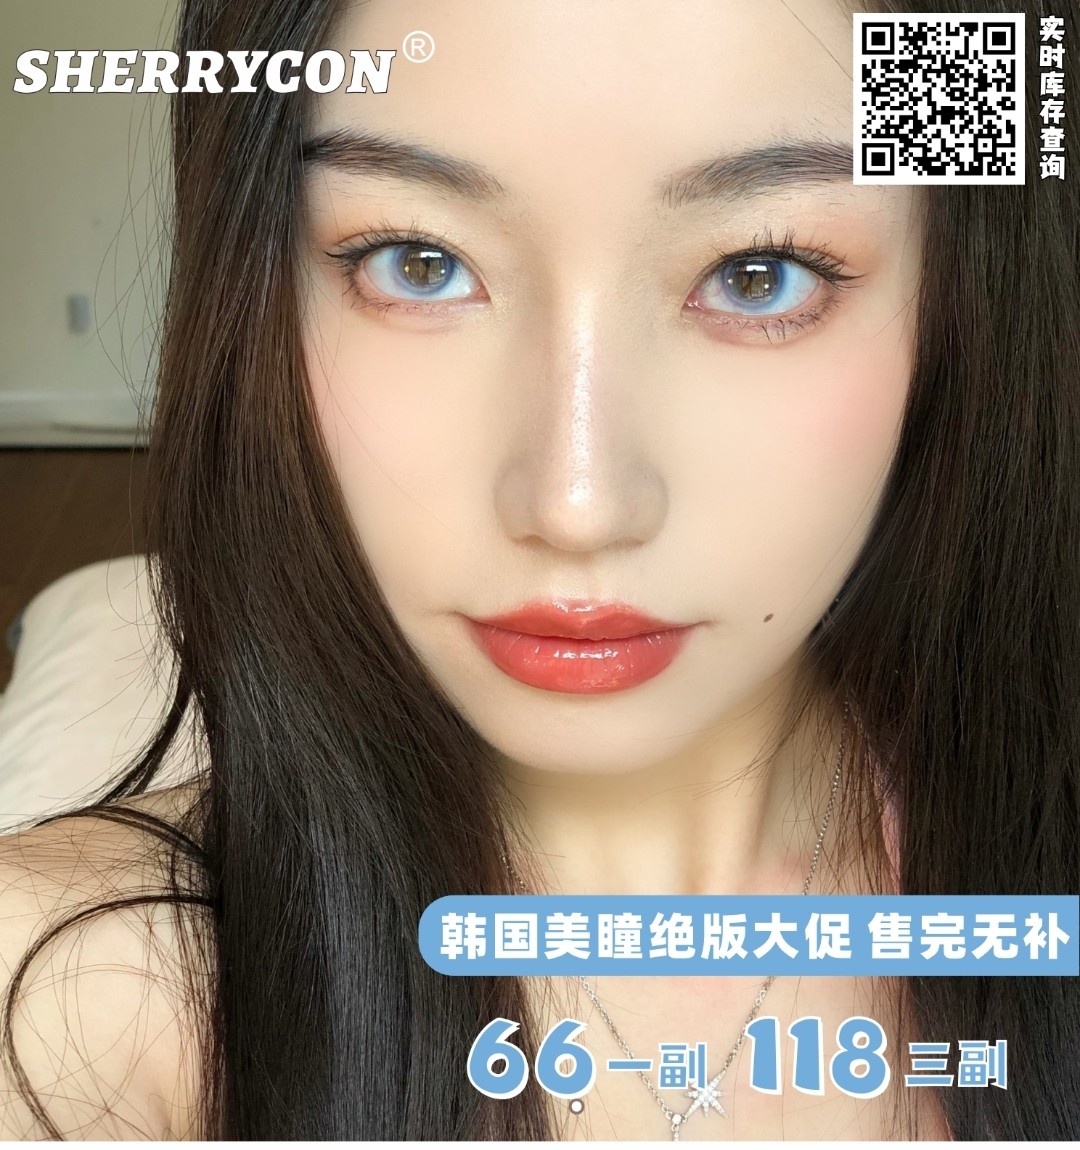 【秒杀】SHERRYCON 史低抄底真情回馈 韩国原装进口高保湿美瞳持续热销中！